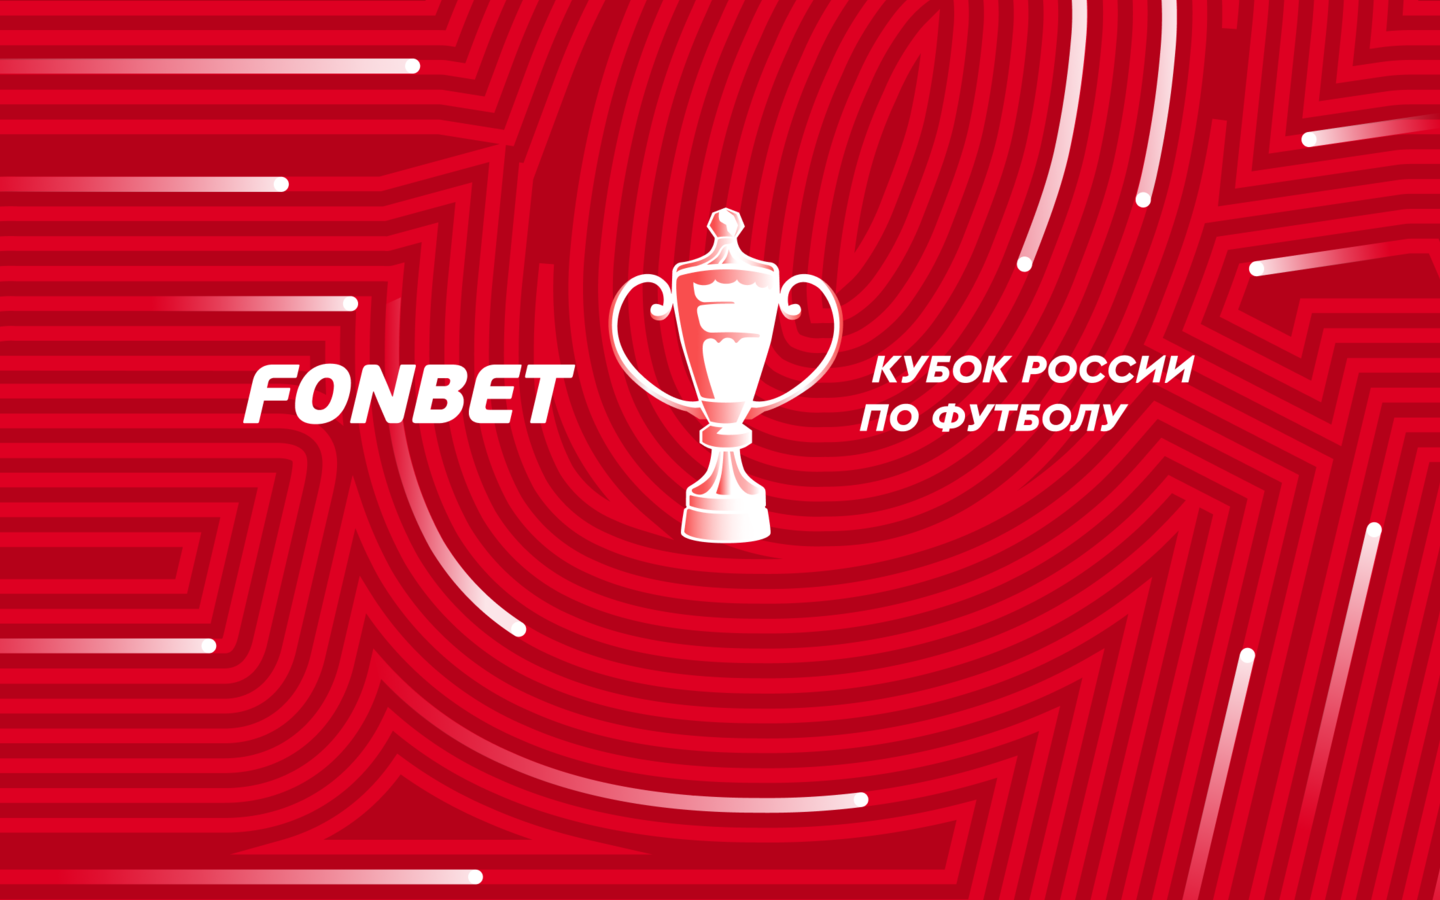 РФС решил сделать Кубок России самым популярным турниром в стране